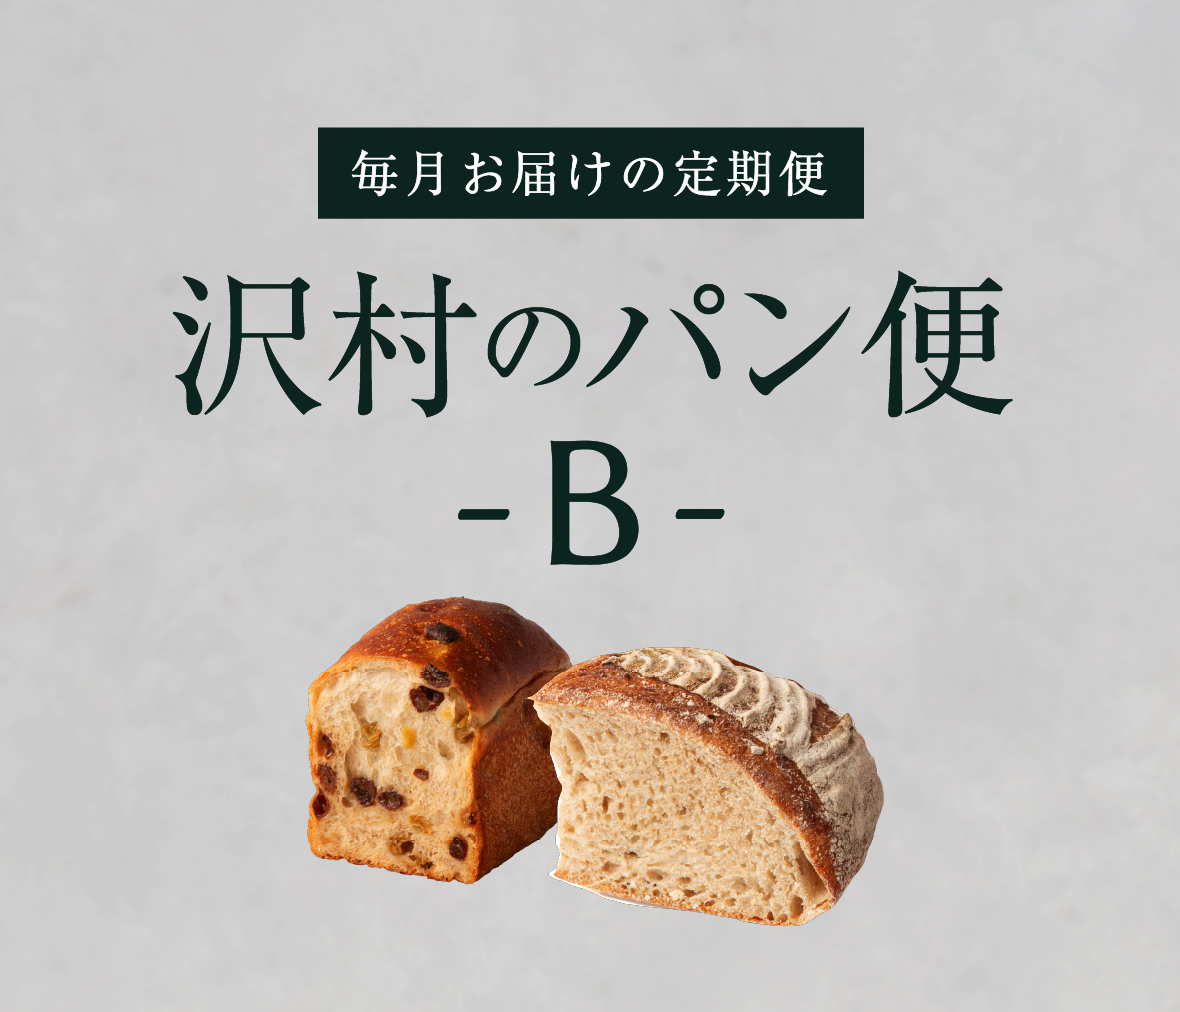 【沢村のパン便】B おすすめパンセット